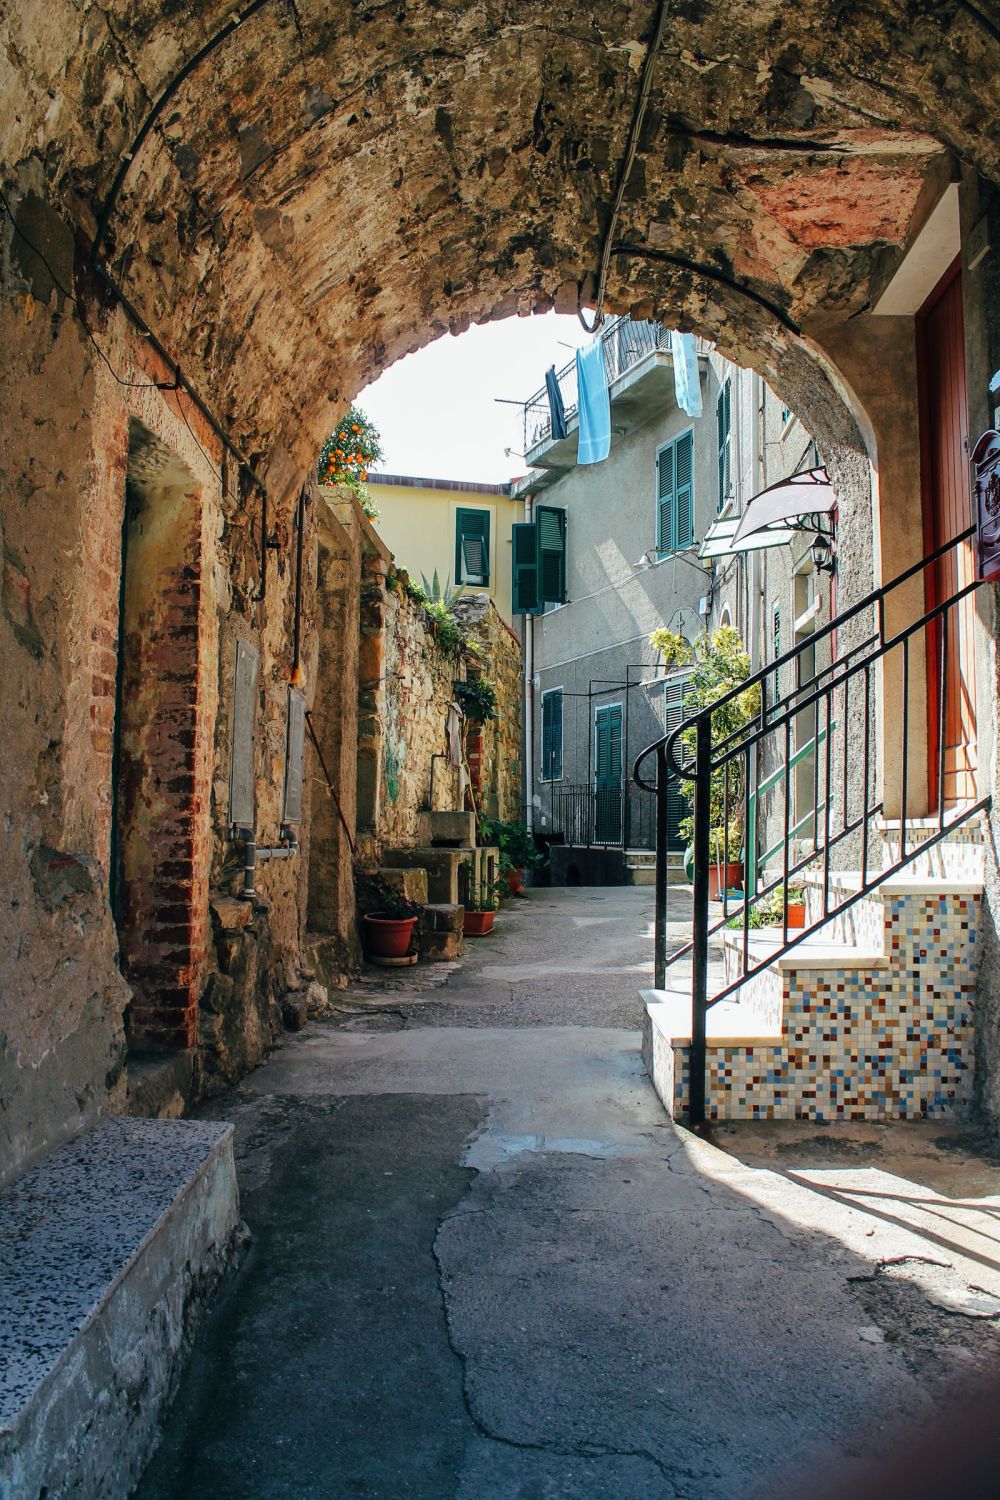 Corniglia in Cinque Terre, Italy - The Photo Diary! [3 of 5] (3)